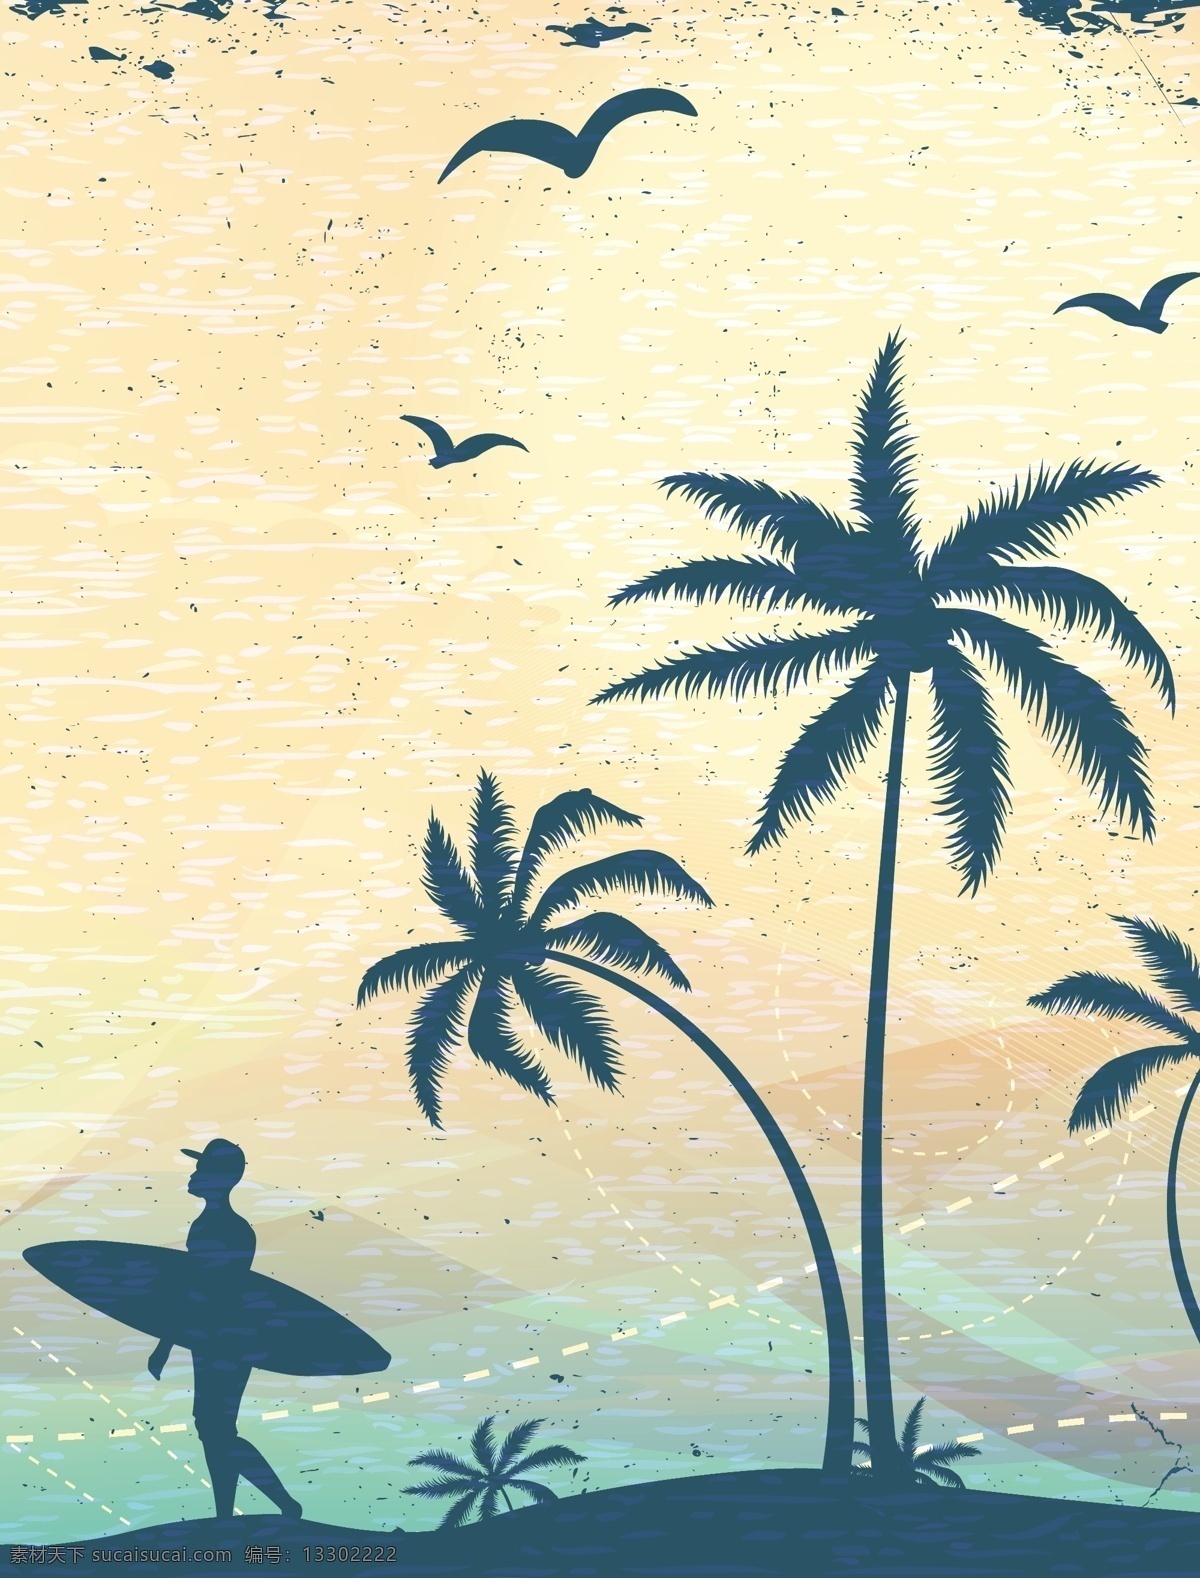 冲浪人物剪影 椰树 椰树插画 夏日主题插画 自然风光 空间环境 矢量素材 白色